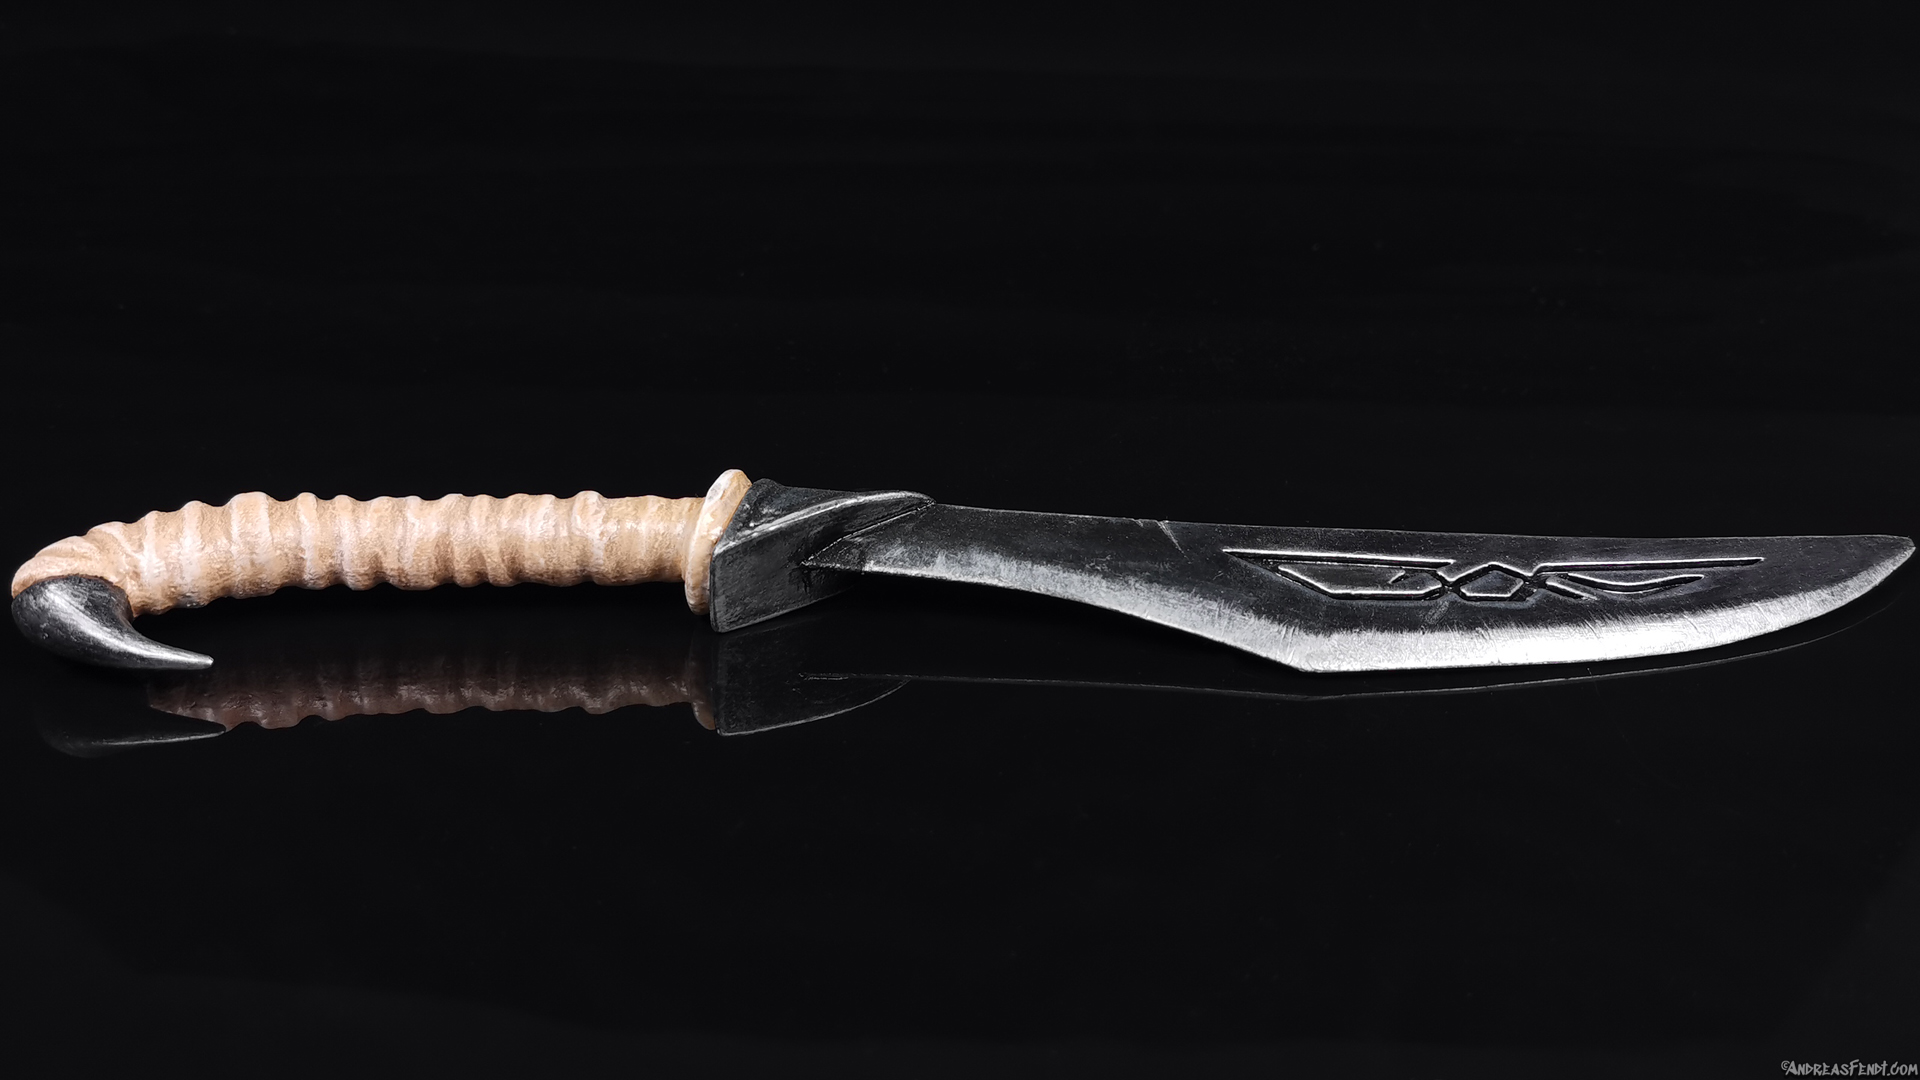 Skyrim nordic caved dagger painted 3D-Print model printed